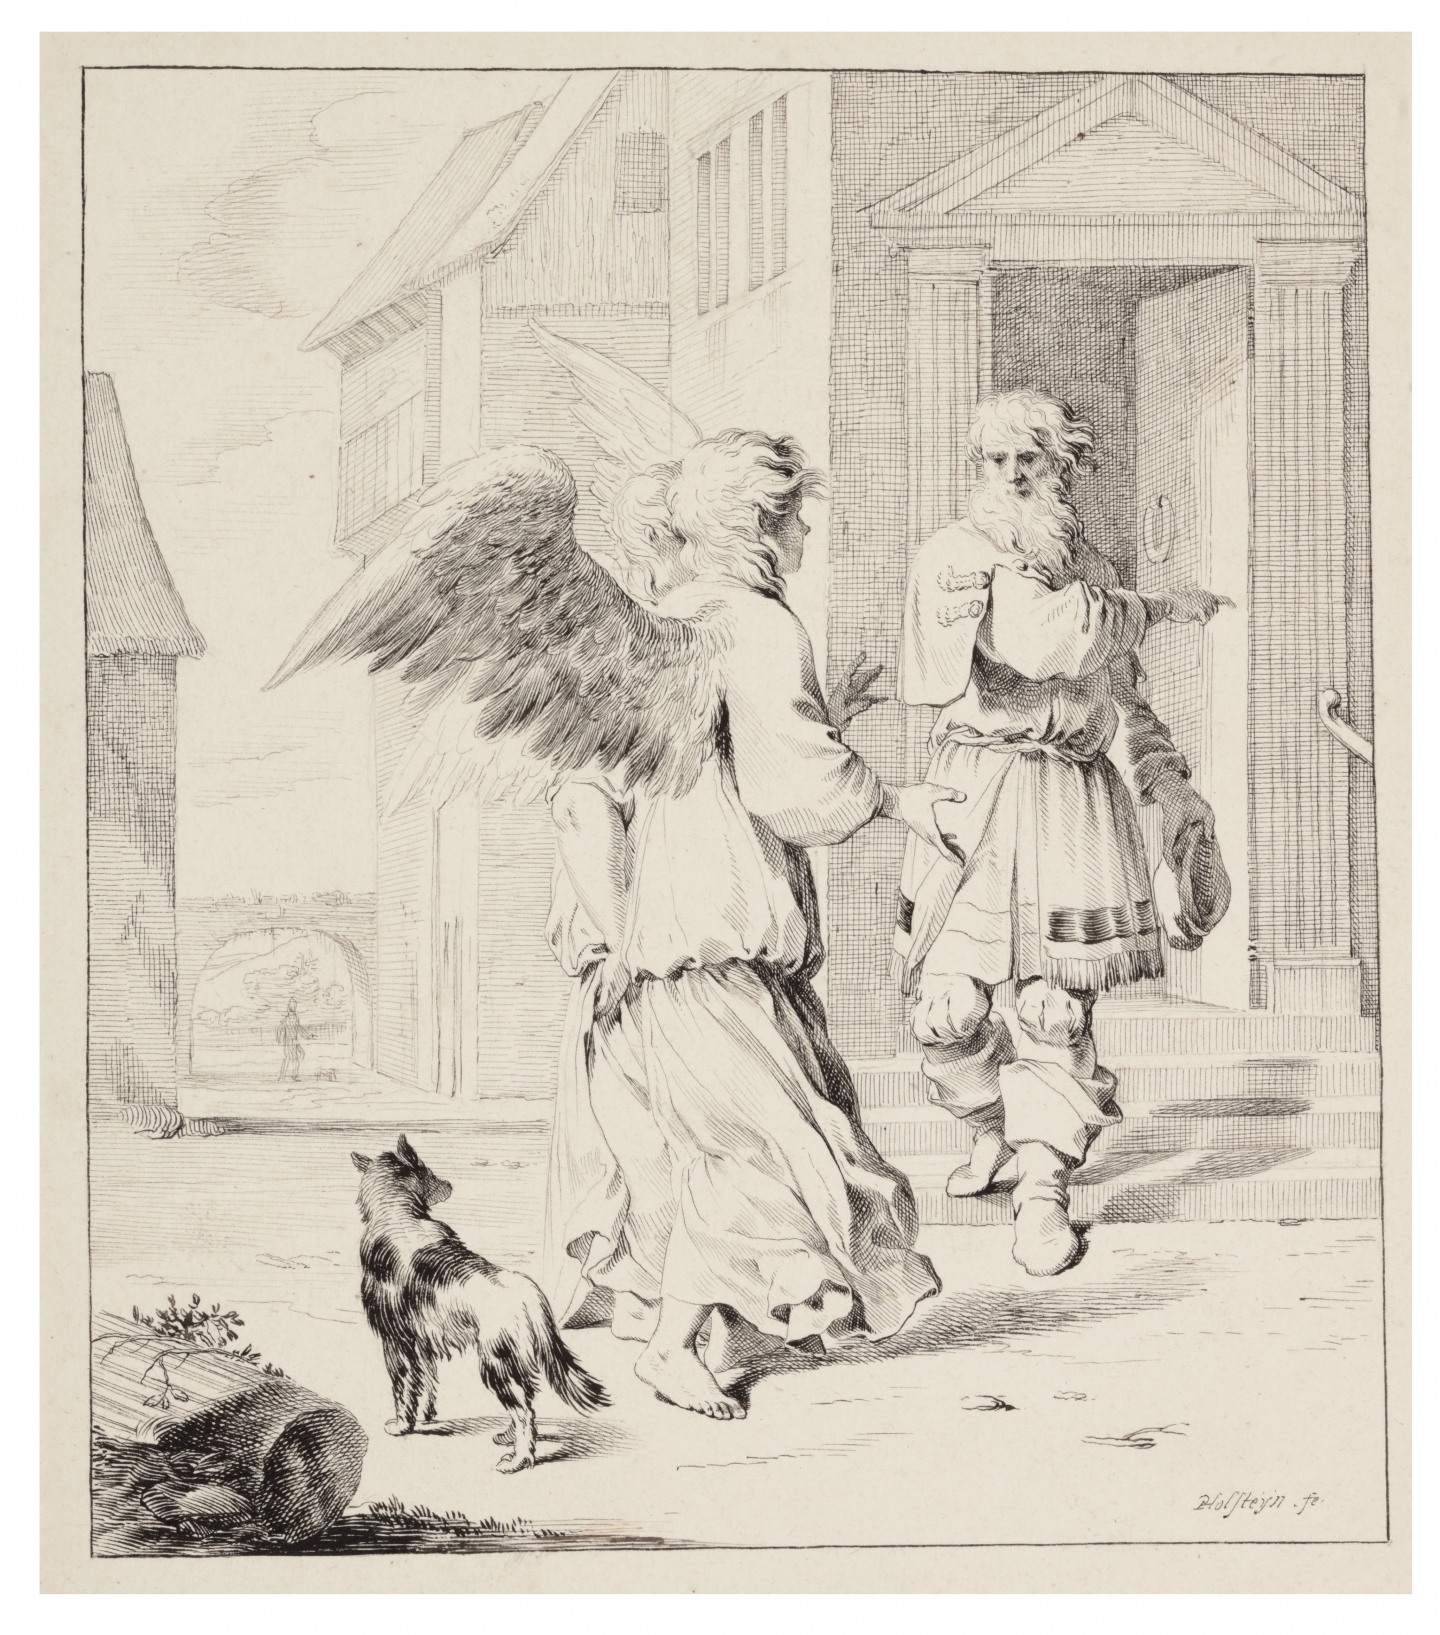 Pieter Holsteyn II  (Haarlem 1614 – 1673 Haarlem) Lot welcoming the Two Angels (Genesis 19, 1-2)